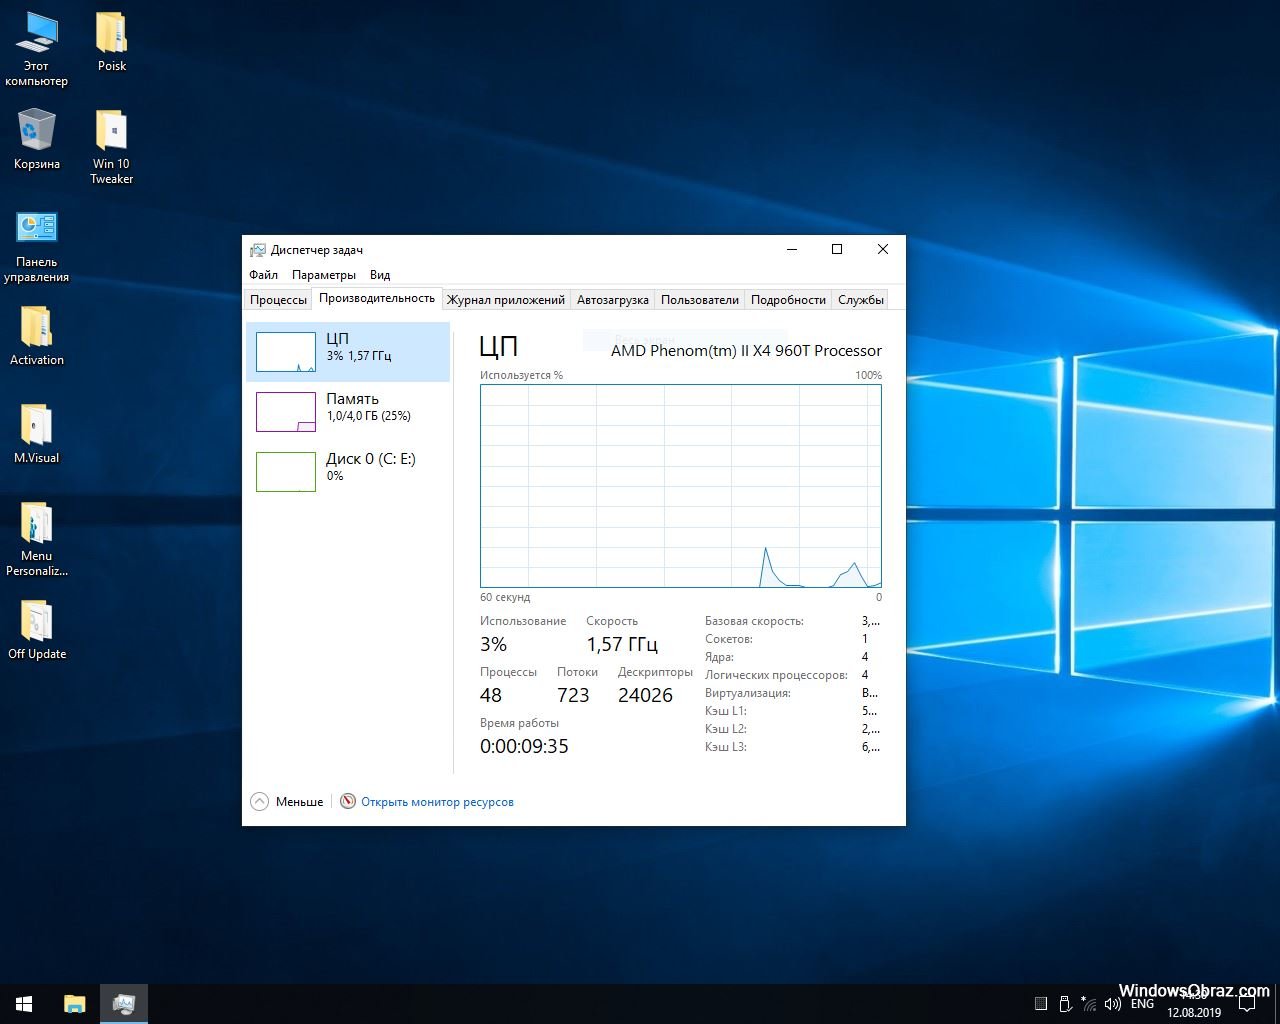 Легкая виндовс 10 64. Самая легкая Windows. Облегченный виндовс 10. Самая облегченная Windows. Облегченная версия Windows 10.